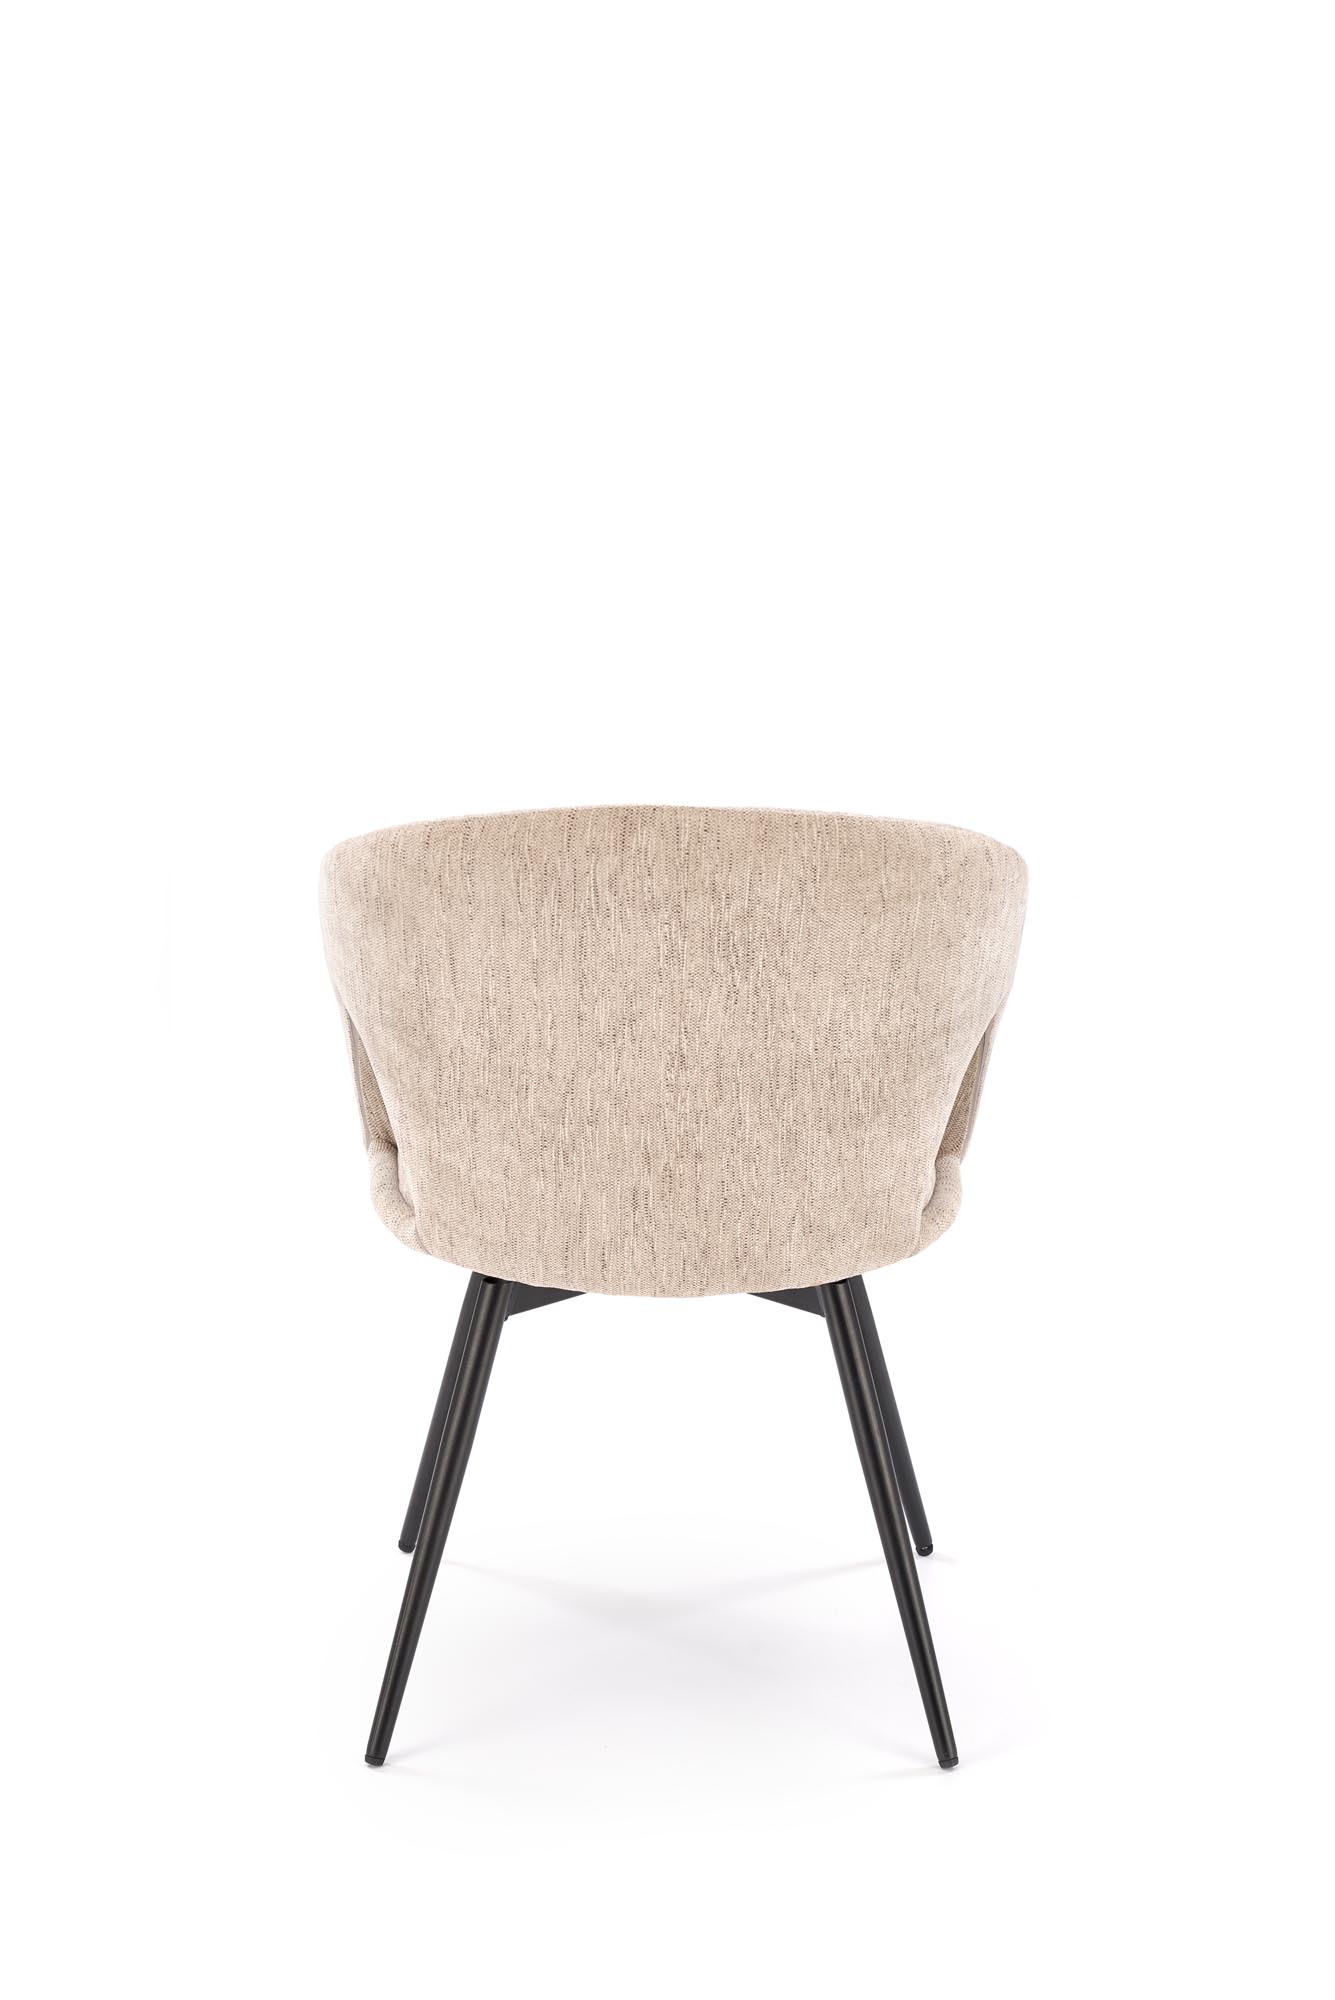 Krzesło tapicerowane K550 obrotowe - szenil beżowy Odin 28 / czarne nogi  Krzesło tapicerowane K550 obrotowe - szenil beżowy Odin 28 / czarne nogi 